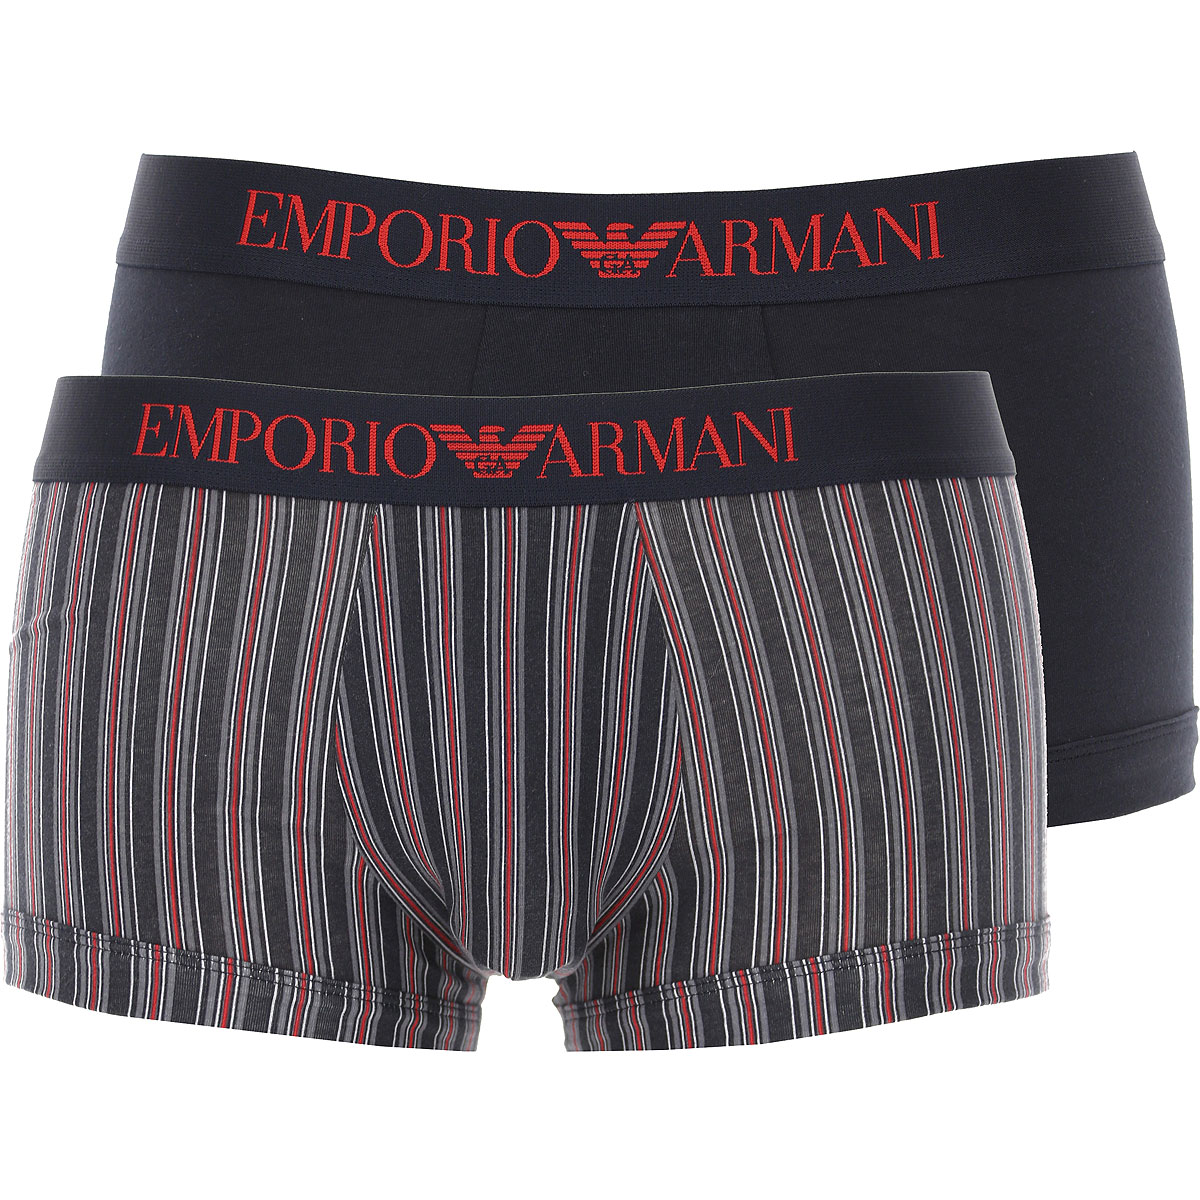 Emporio Armani Boxer Shorts für Herren, Unterhose, Short, Boxer Günstig im Sale, 2 Pack, Anthrazit-Grau, Baumwolle, 2017, L M